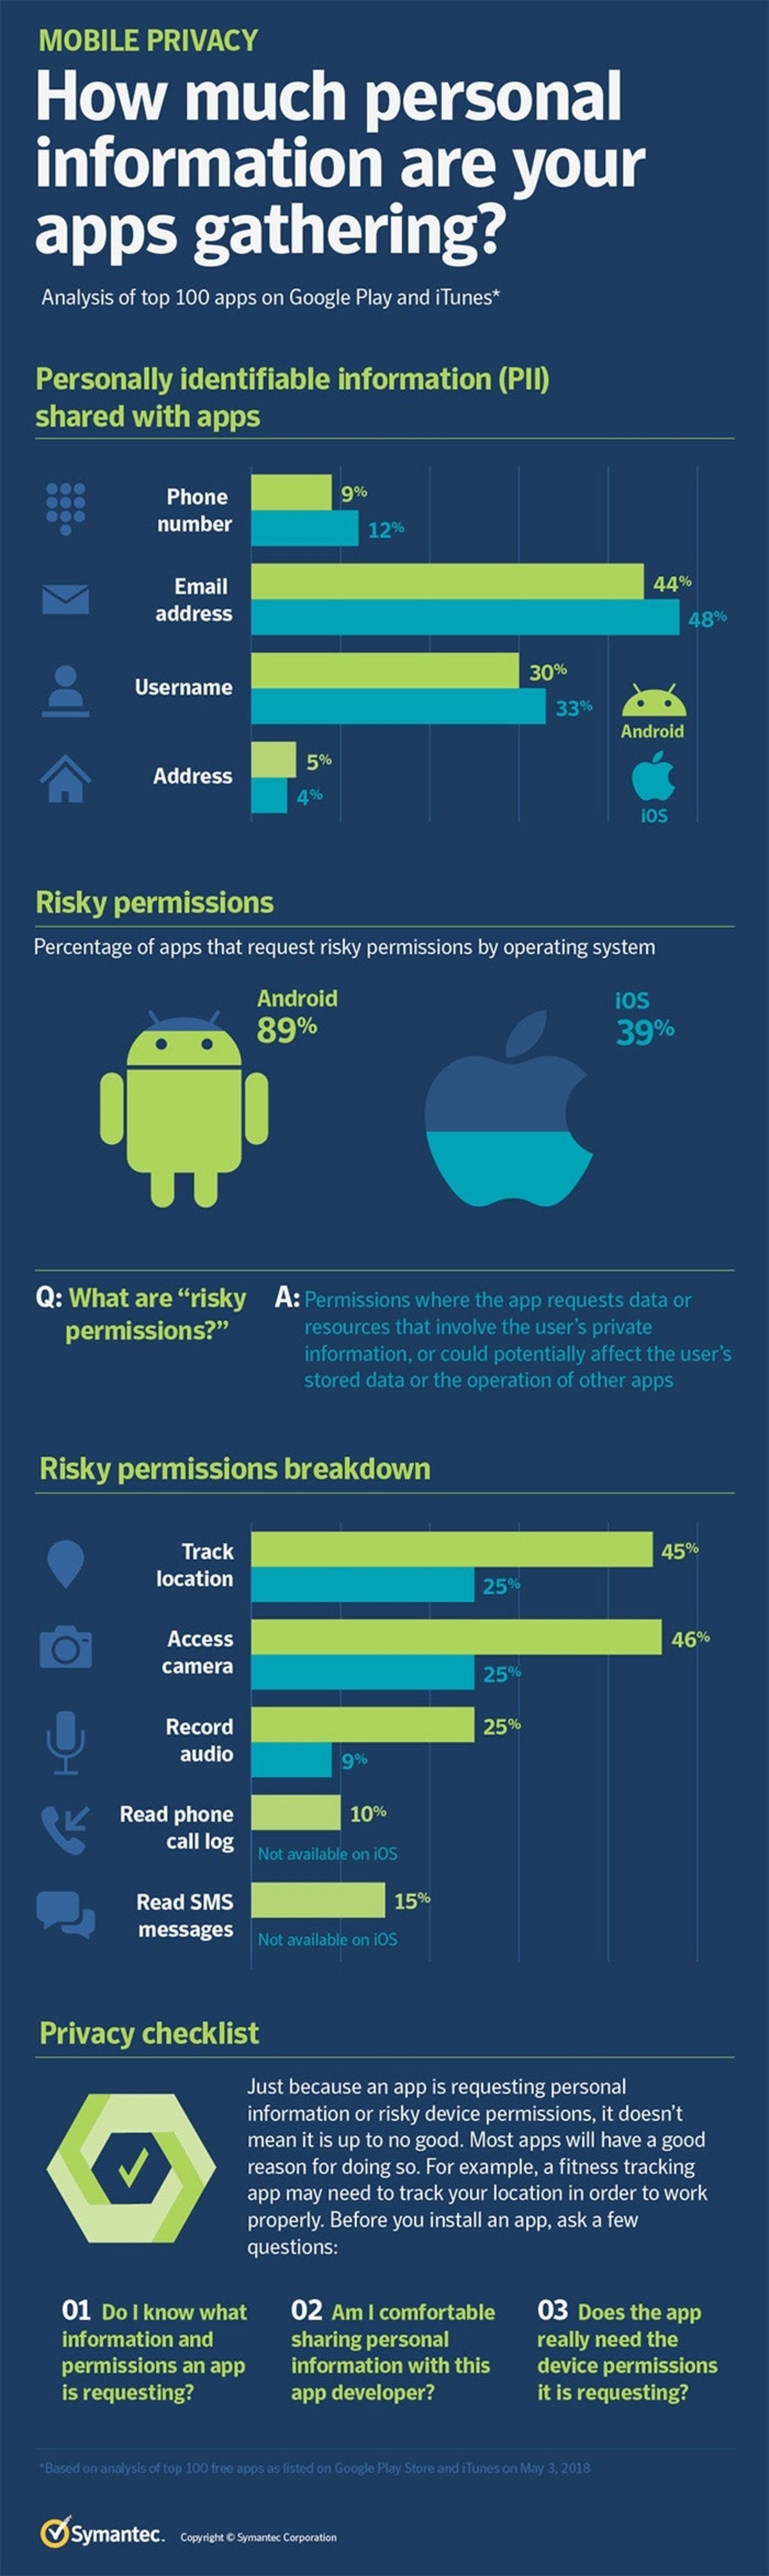 El 89% de las apps en Android tiene acceso a información sensible